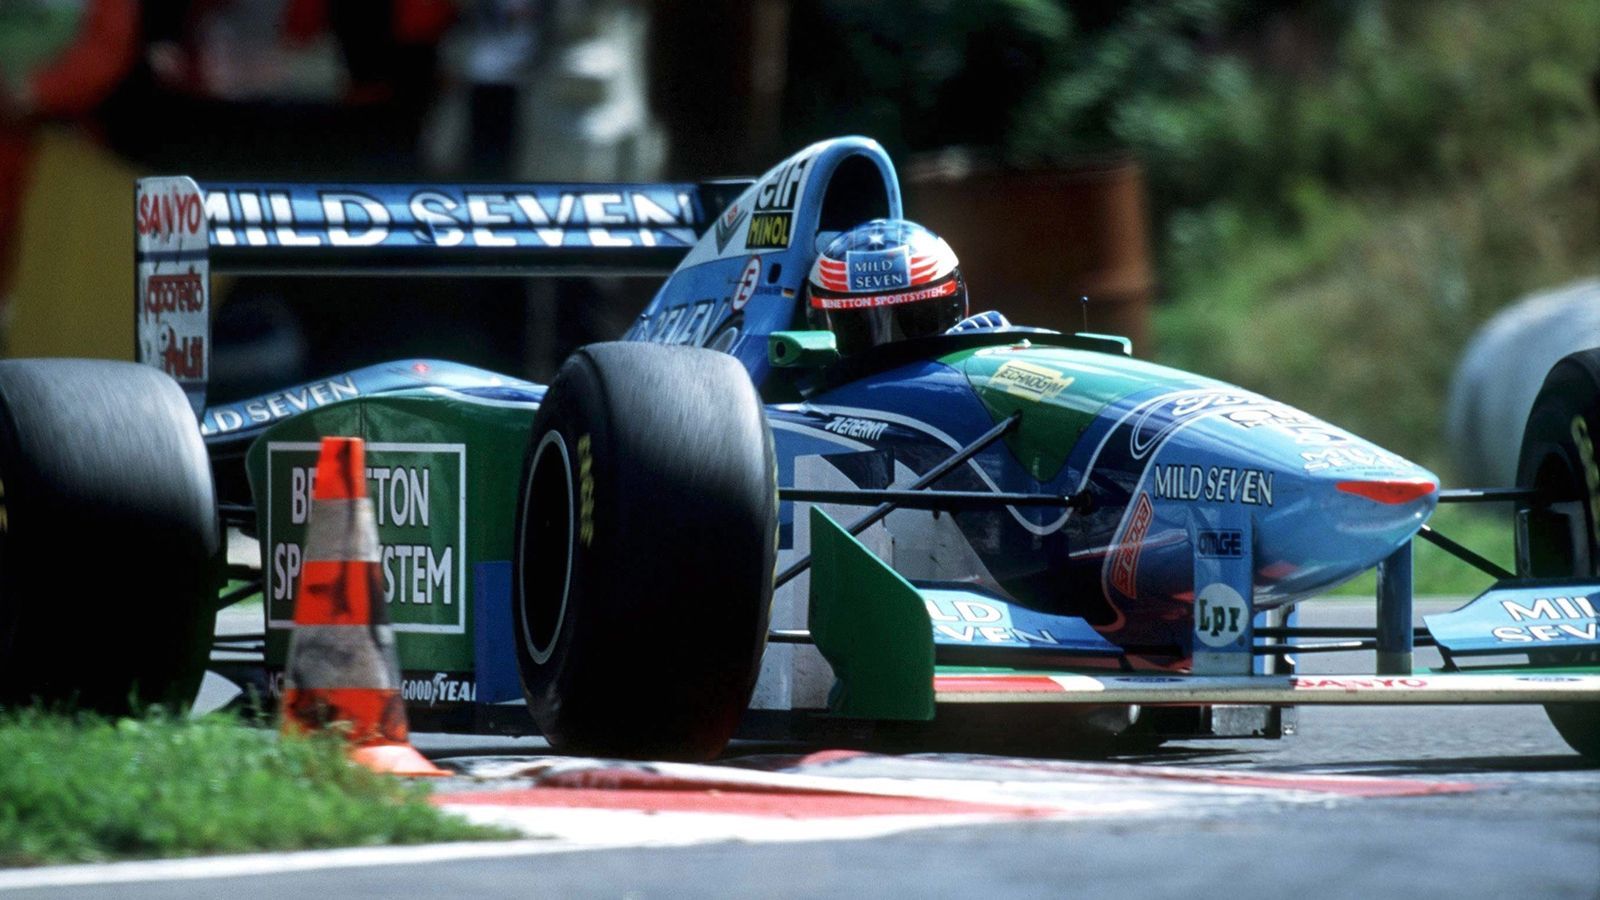 <strong>1994 - Ein Punkt Unterschied - Michael Schumacher 92, Damon Hill 91</strong><br>Ein Jahr voller Höhen und Tiefen. Schumacher startete furios und fehlte dann viele Rennen aufgrund von Strafen und Disqualifikationen. Im finalen Rennen krachte Schumacher in den Wagen von Hill, beide Autos schieden aus und der Deutsche holte die Meisterschaft.